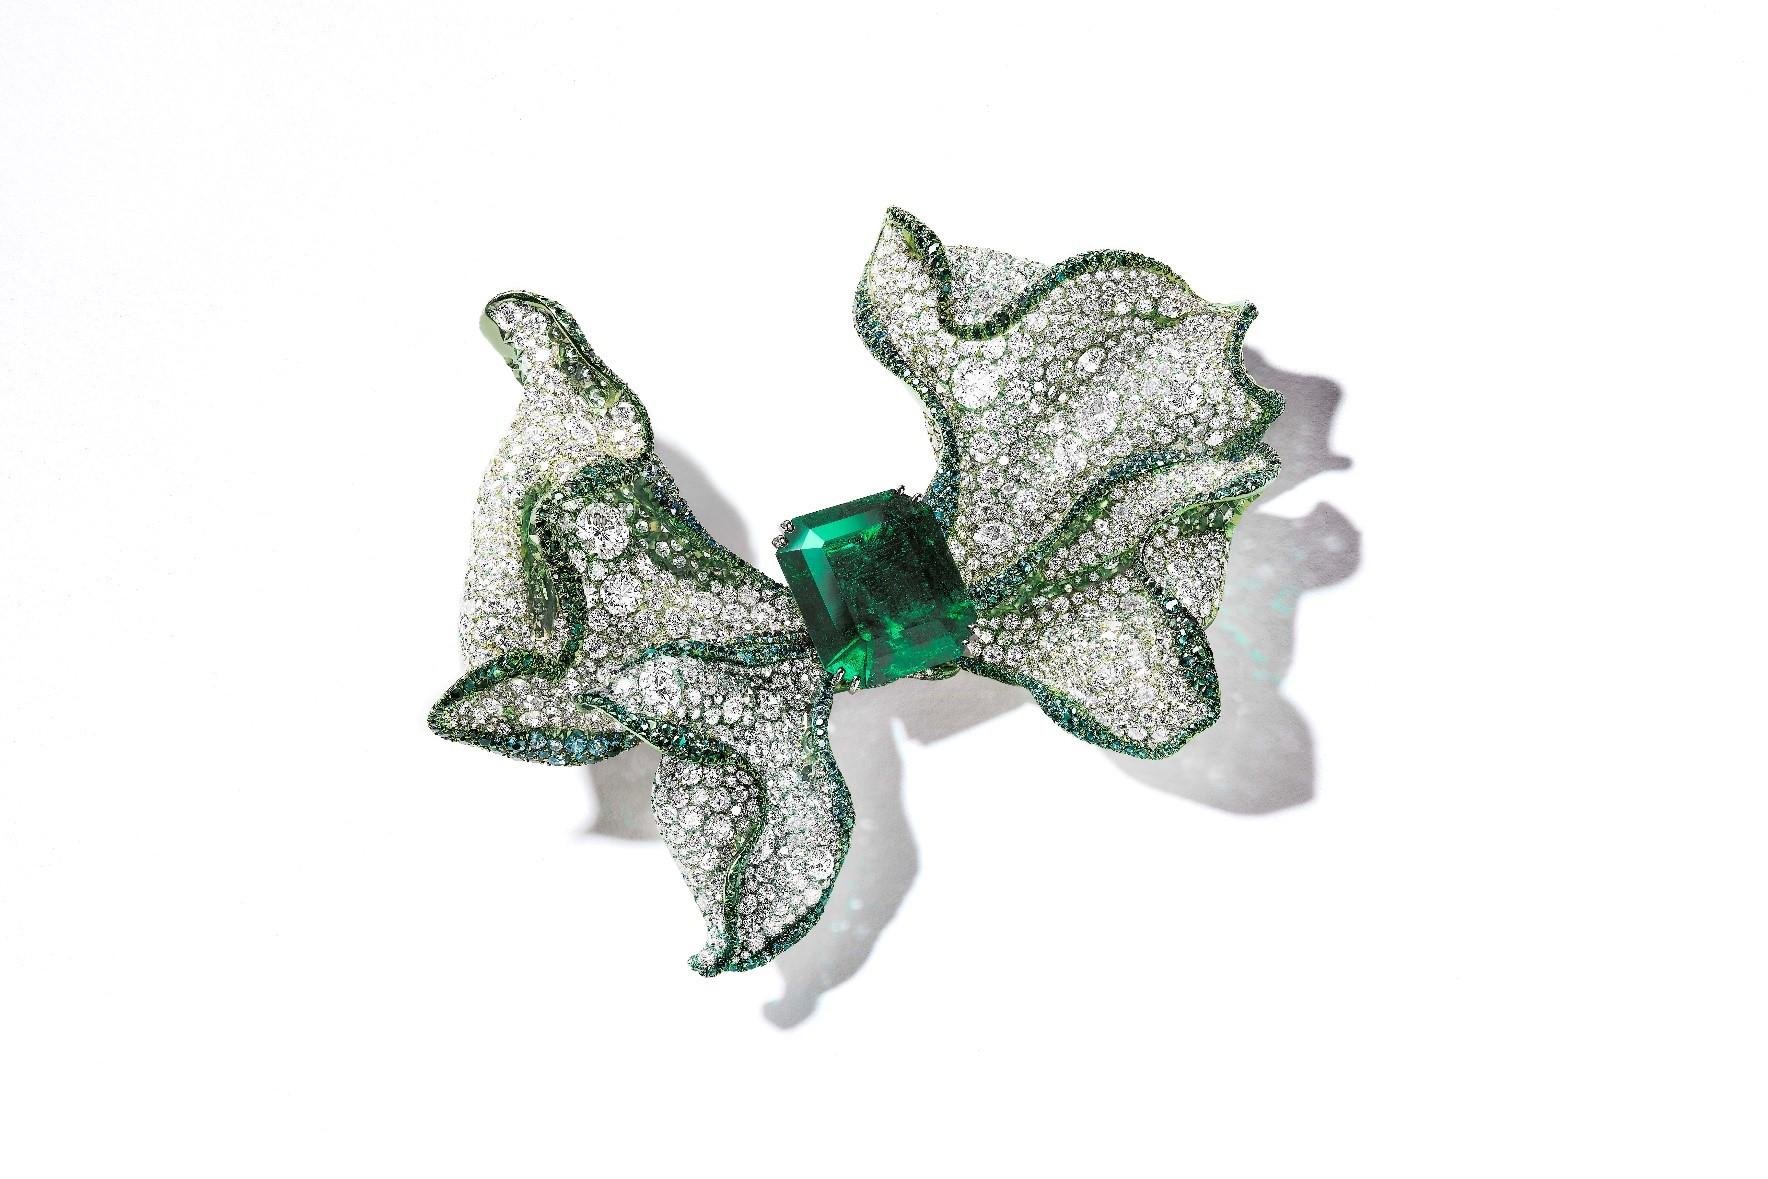 مجموعة مجوهرات Cindy Chao The Art Jewel - مجموعة Black Label Masterpieces - المعرض الفني العالمي Masterpiece London - بروش Emerald Ribbon